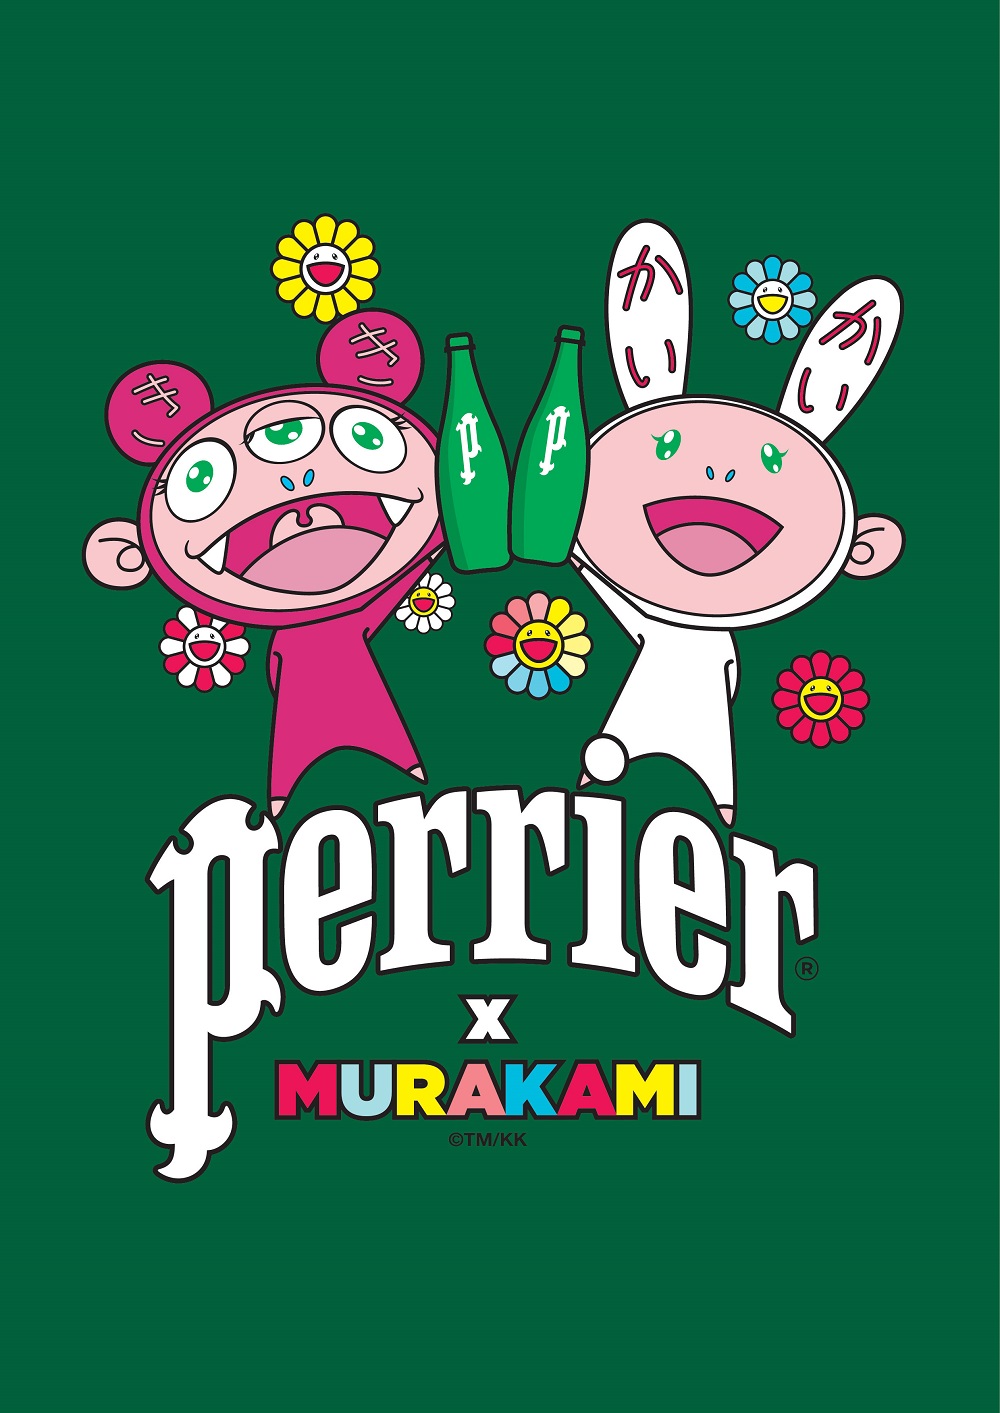 Takashi Murakami colabora con Perrier en una edición limitada de sus botellas (2)